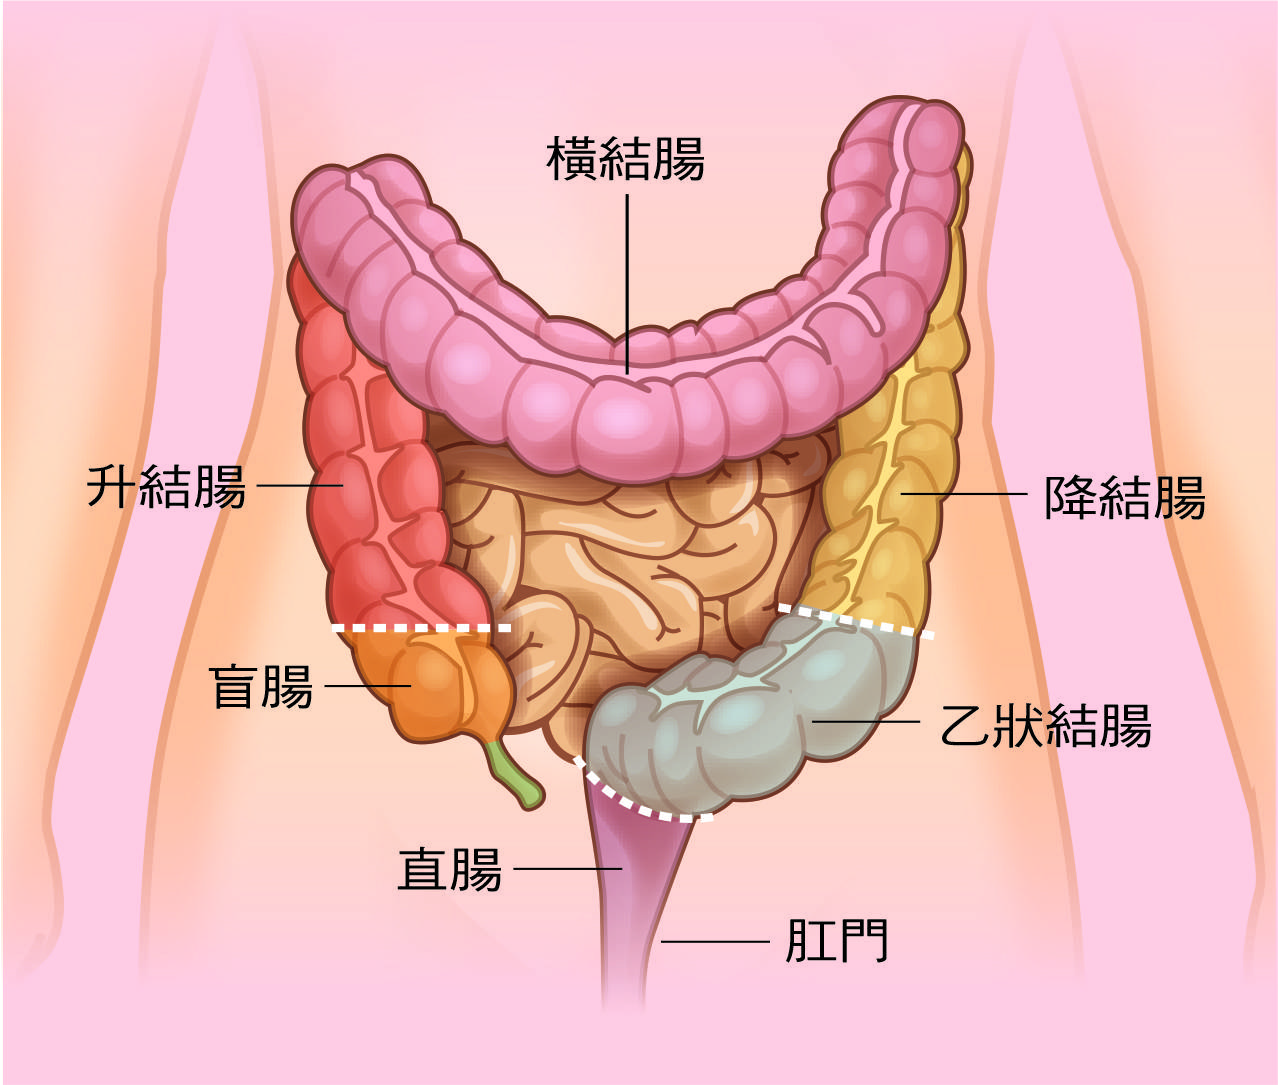 大致可分为四个部分,由盲肠,结肠(可分升,横,降,乙状结肠),直肠,肛门